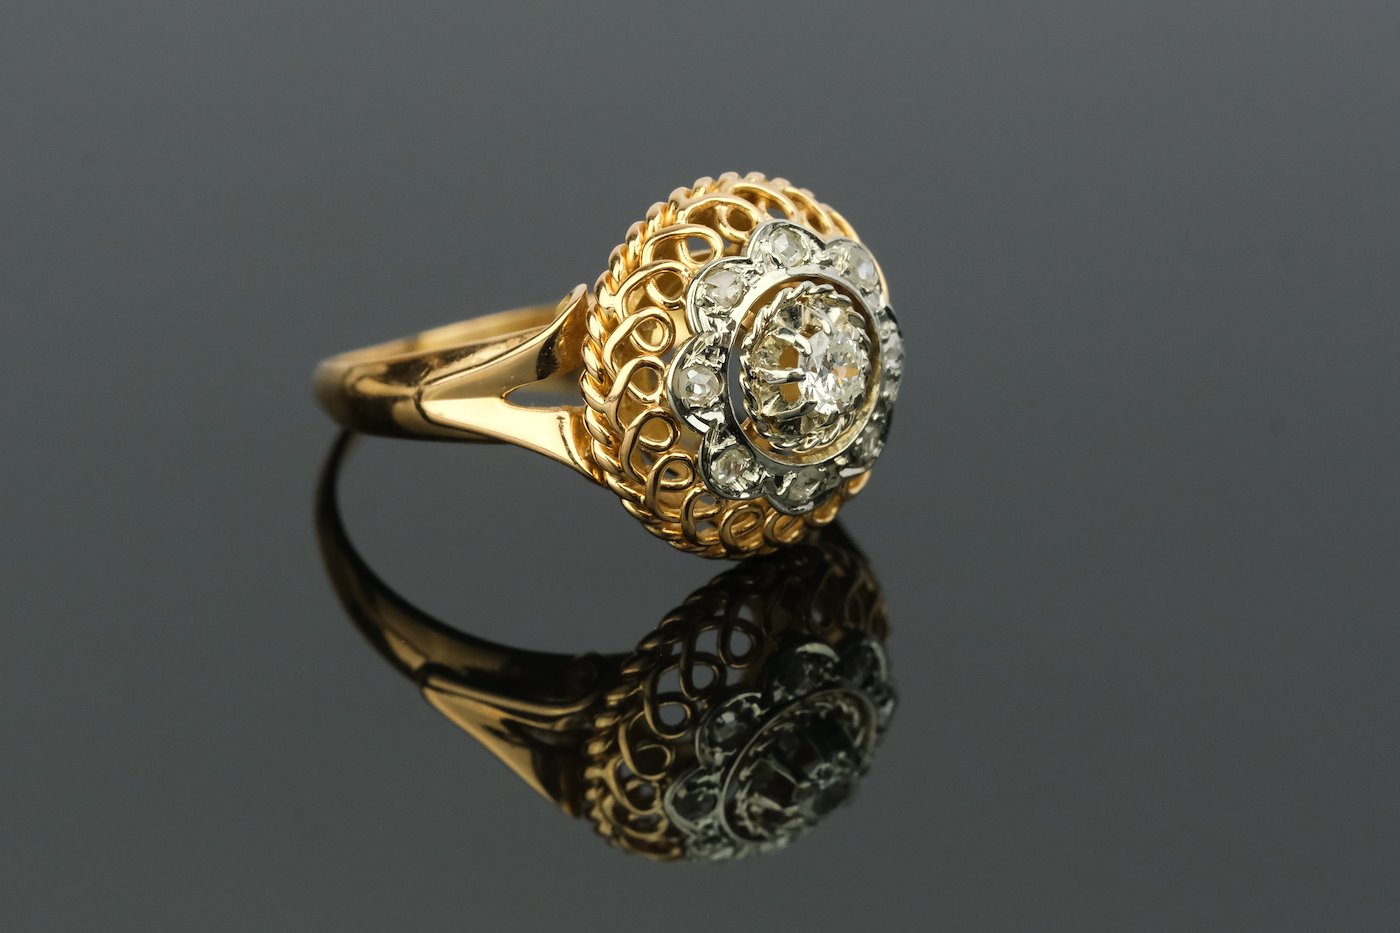 .. - Prsten s centrálním diamantem 0,09 - 0,12 t a 8 routami, zlato 750/1000, značeno platnou puncovní značkou "kohout", hrubá hmotnost 3,70 g